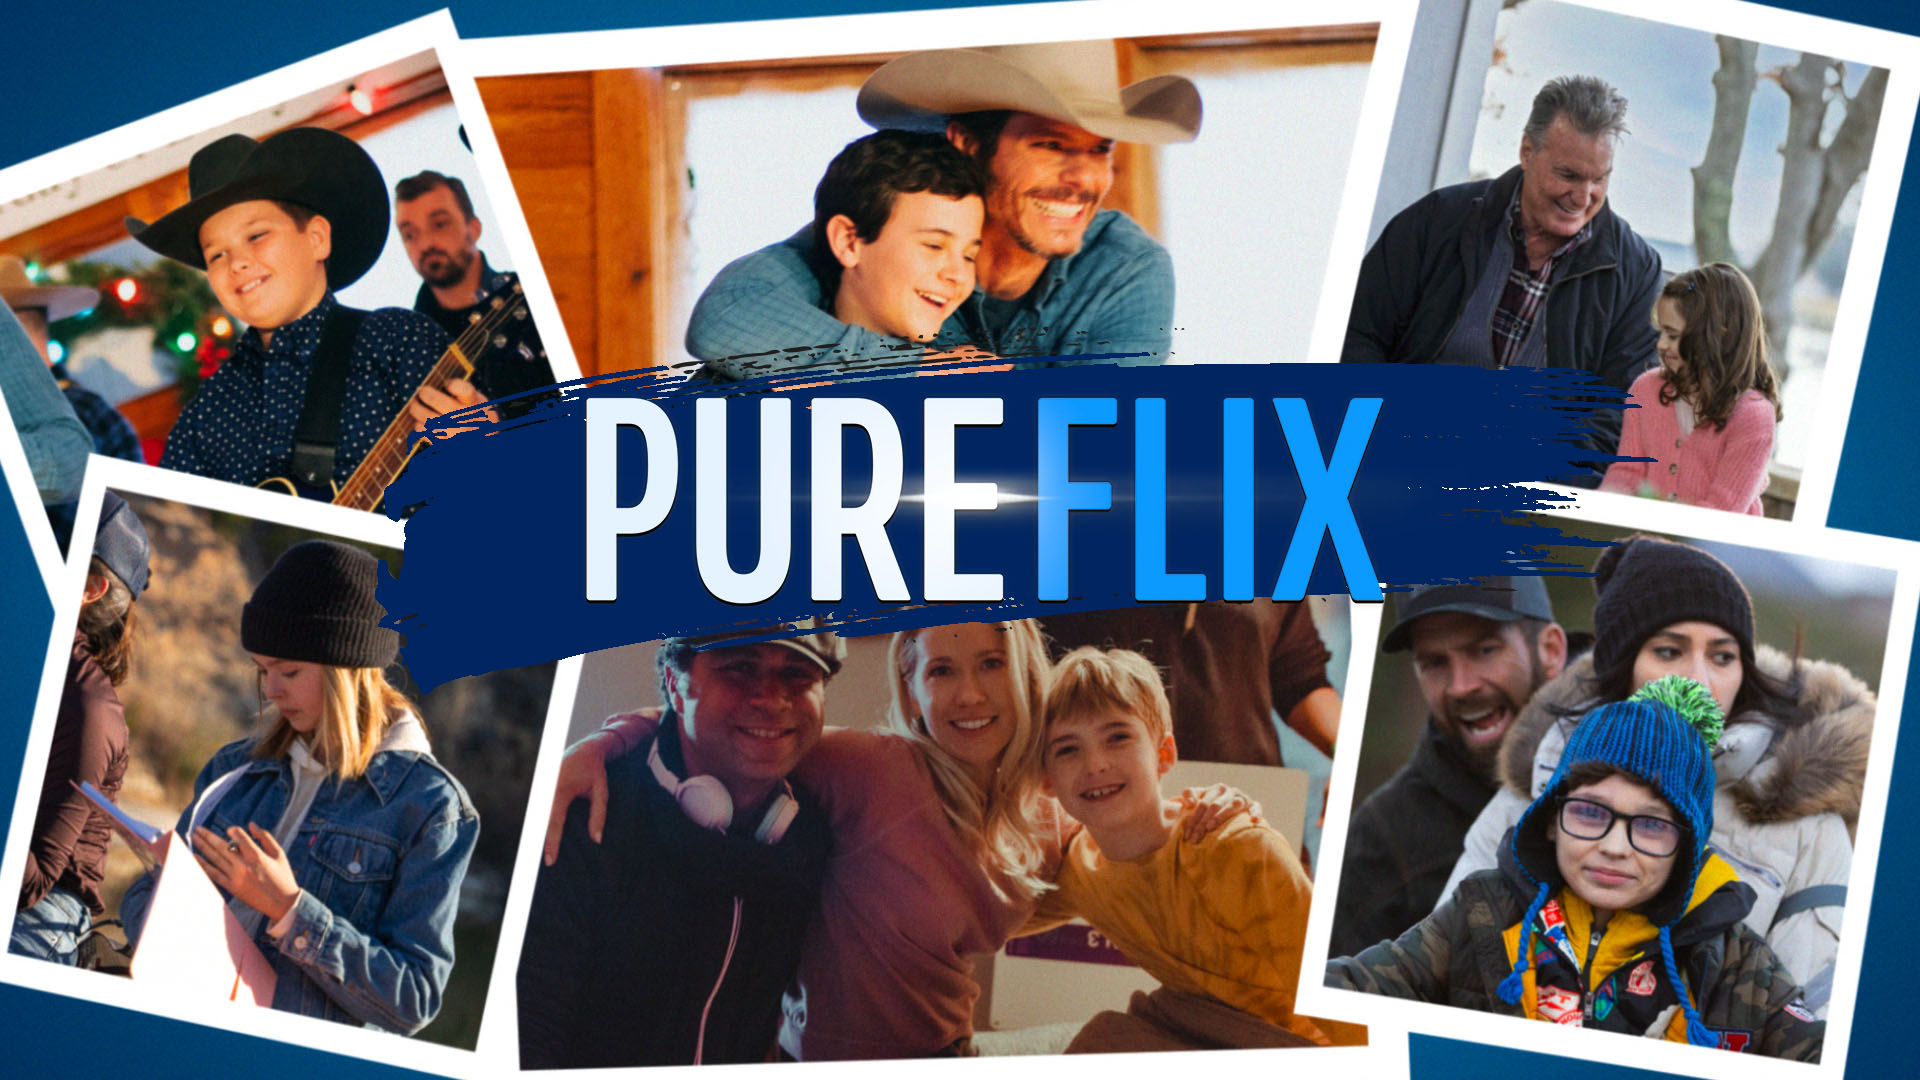 pure flix kid actors blog header